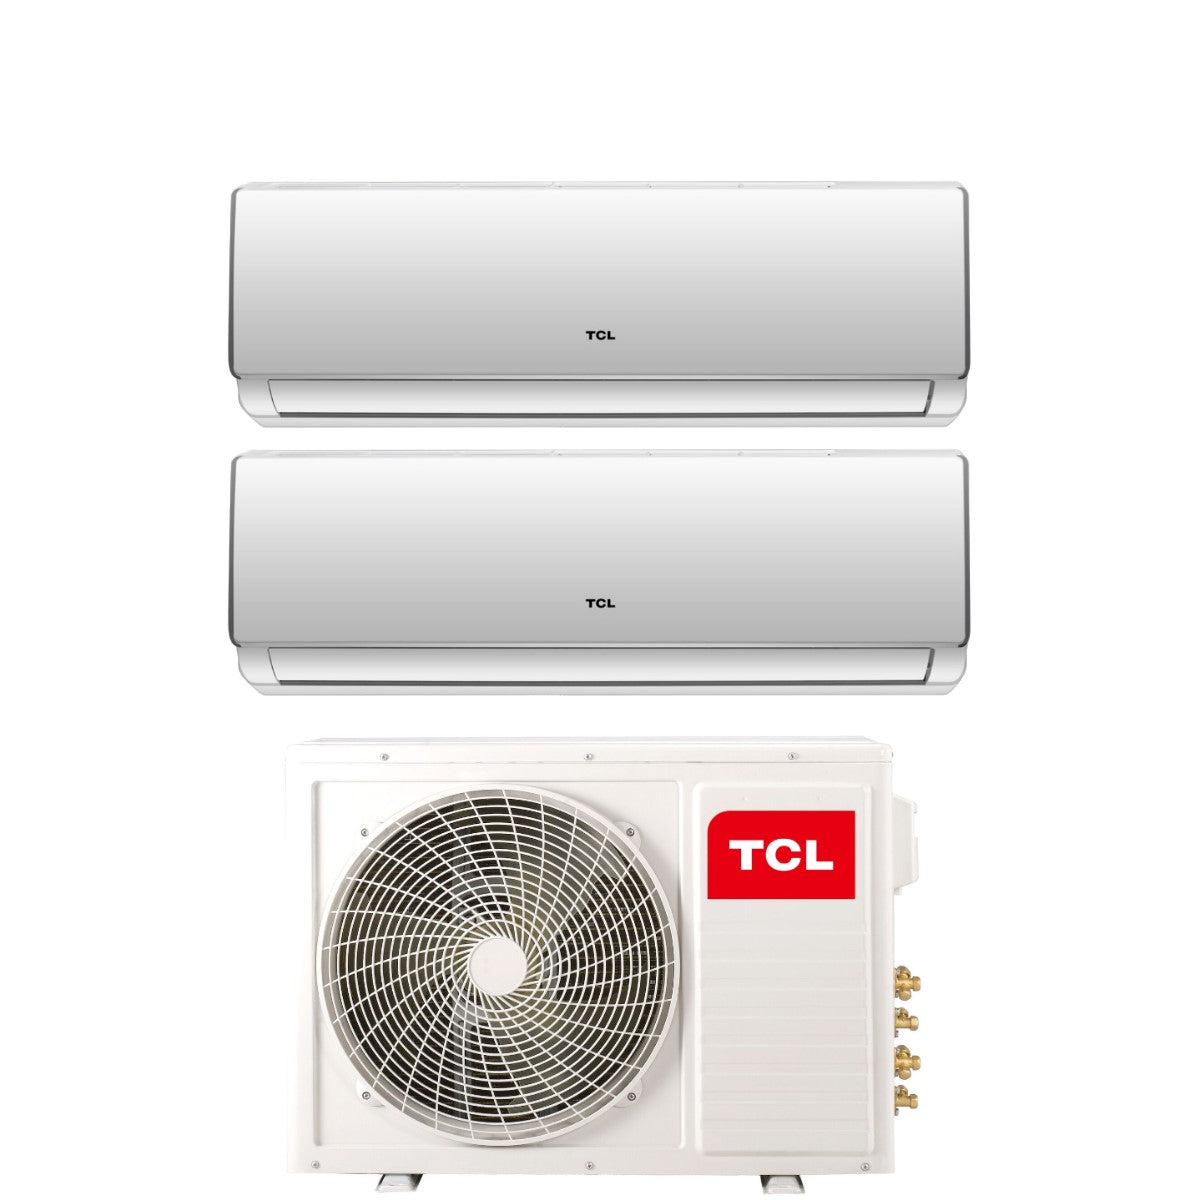 immagine-1-tcl-climatizzatore-condizionatore-tcl-dual-split-inverter-serie-elite-f2-912-con-mt1821-r-32-wi-fi-integrato-900012000